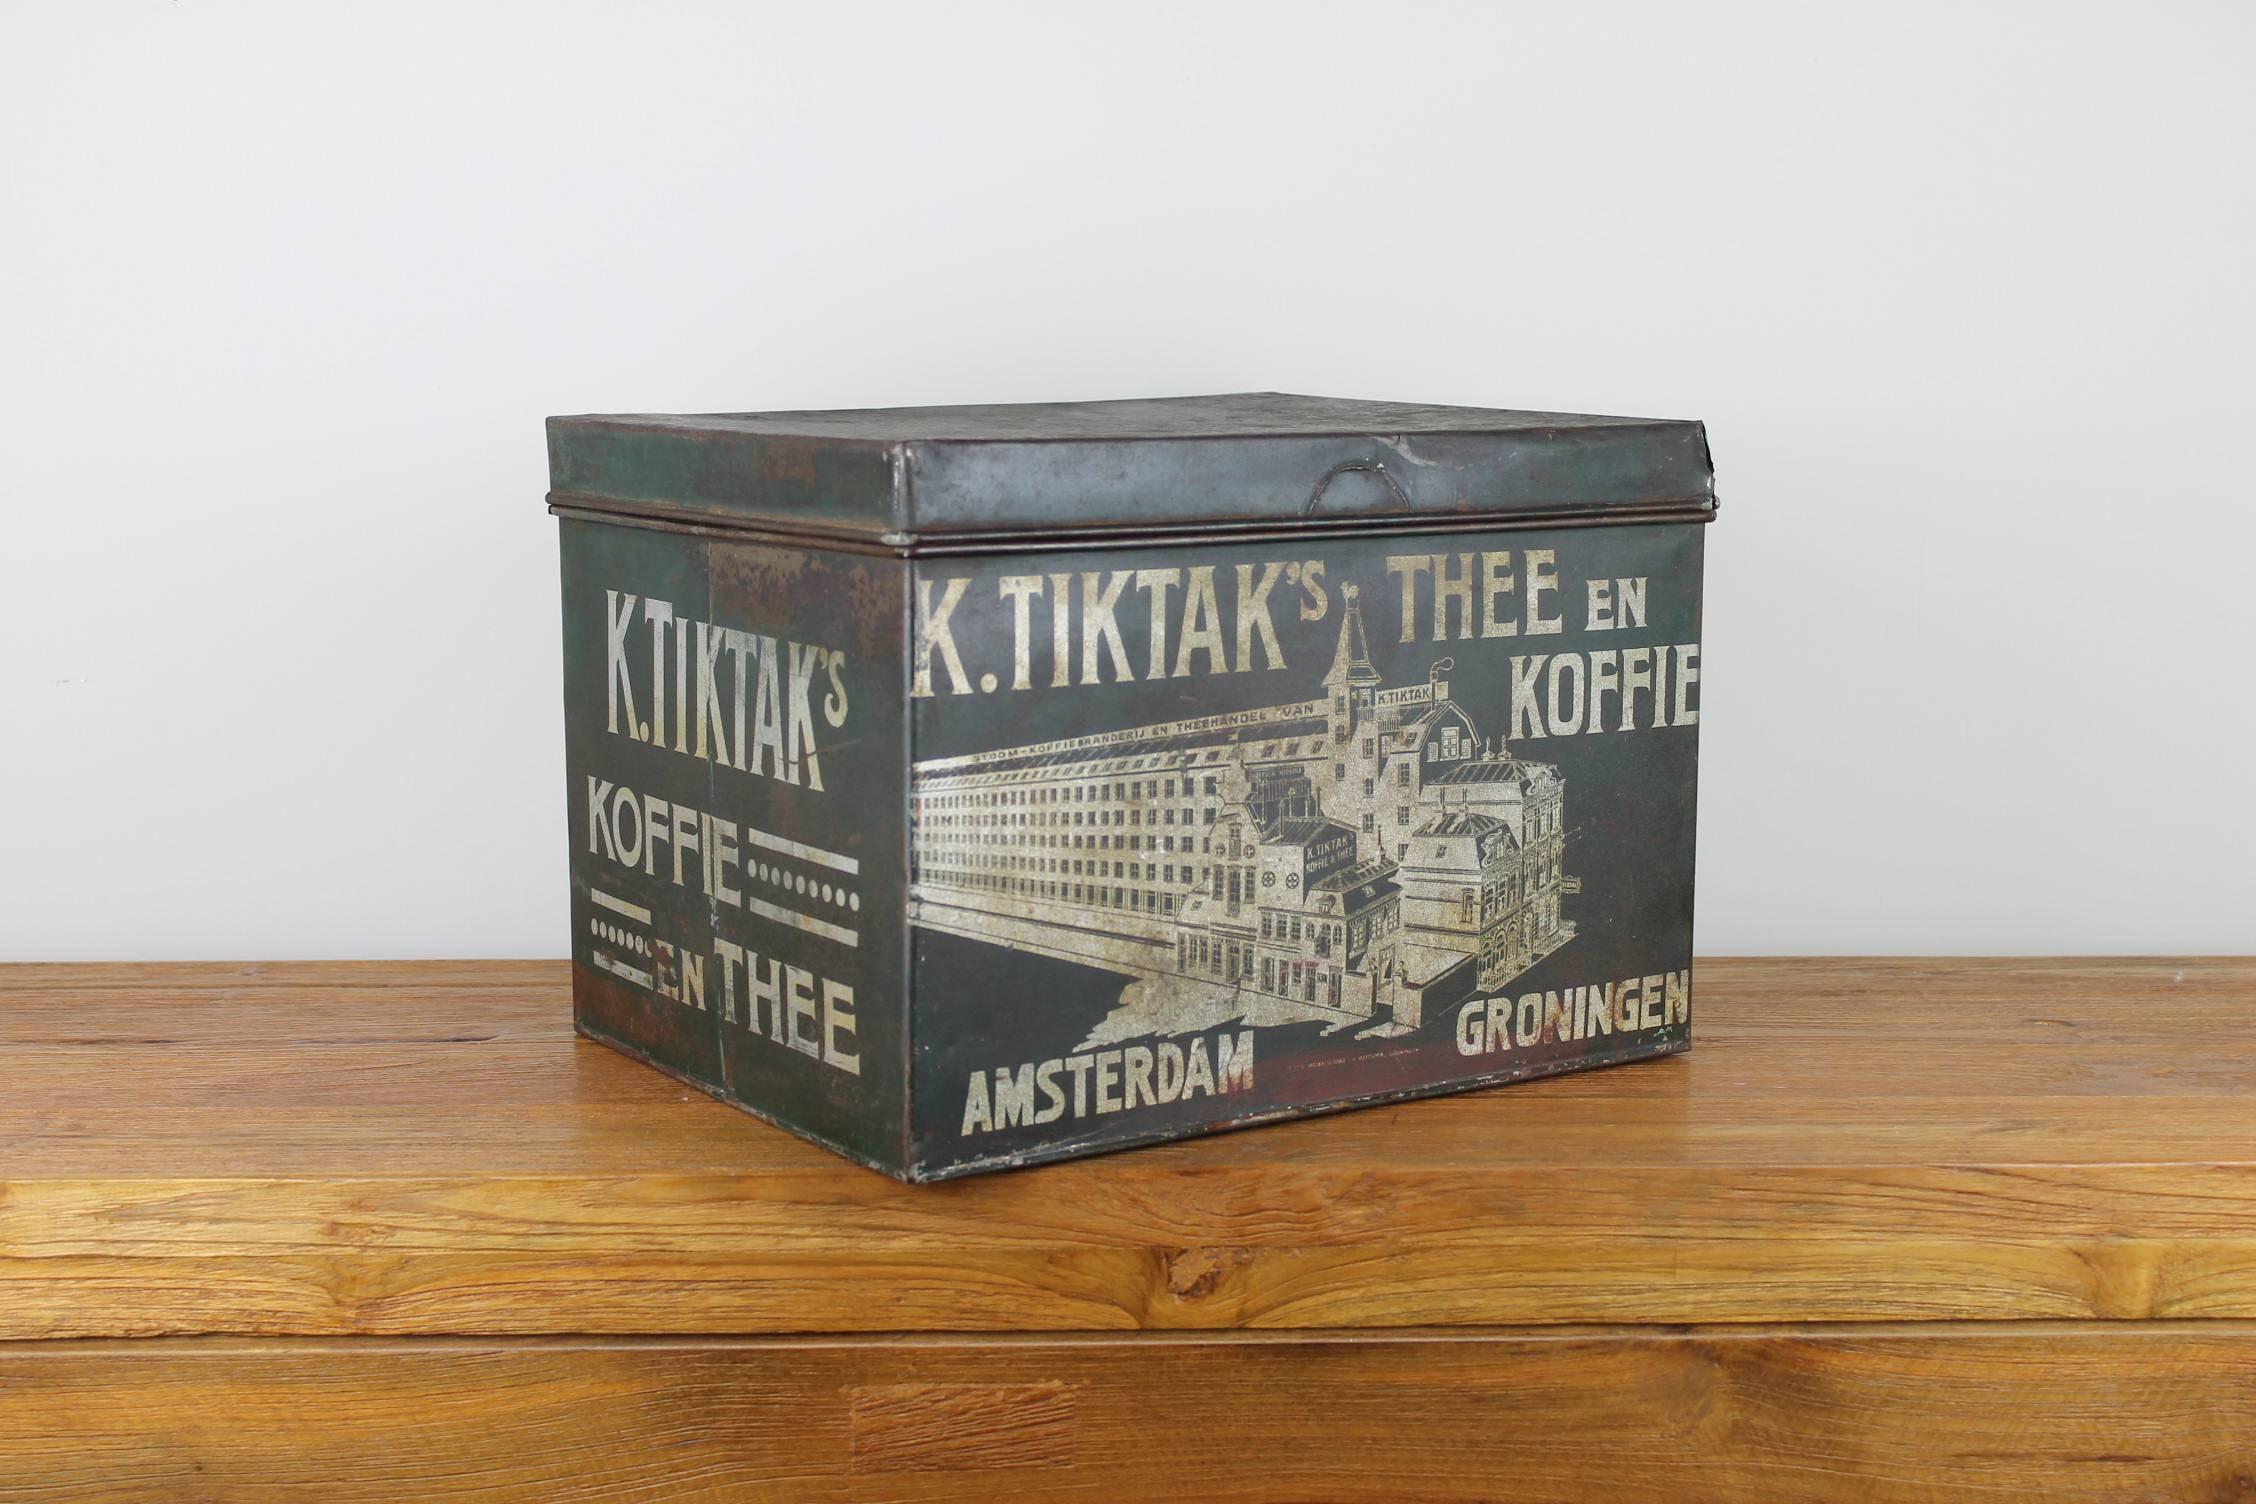 Antike Kaffee- und Teedose aus dem frühen 20. Jahrhundert.
Entworfen und hergestellt für die K.Tiktak Coffee and Tea Factory in Amsterdam und Groningen, Niederlande. 
Eine schöne dunkelgrüne lithografische Zinn-Deko-Box.

Der Deckel der Box ist lose